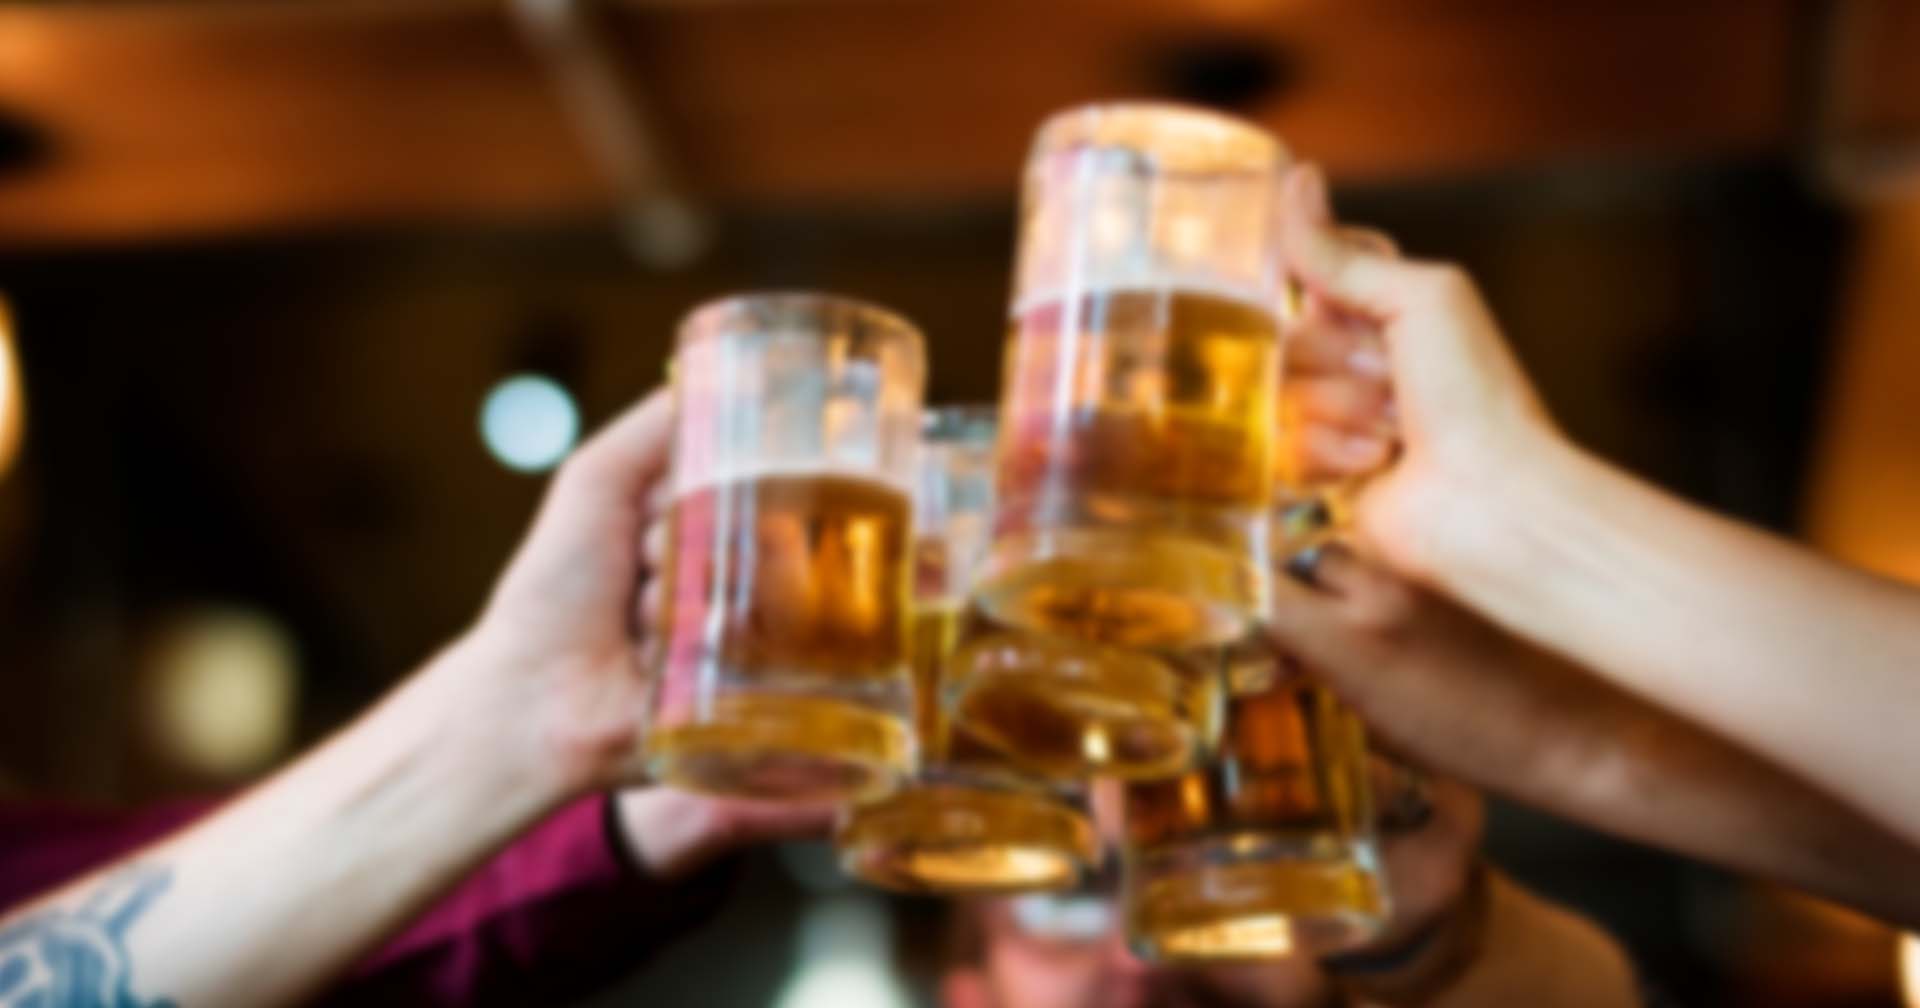 รัฐบาลญี่ปุ่นกระตุ้นคนรุ่นใหม่ดื่มแอลกอฮอล์มากขึ้น หลังเก็บภาษีได้น้อยลง